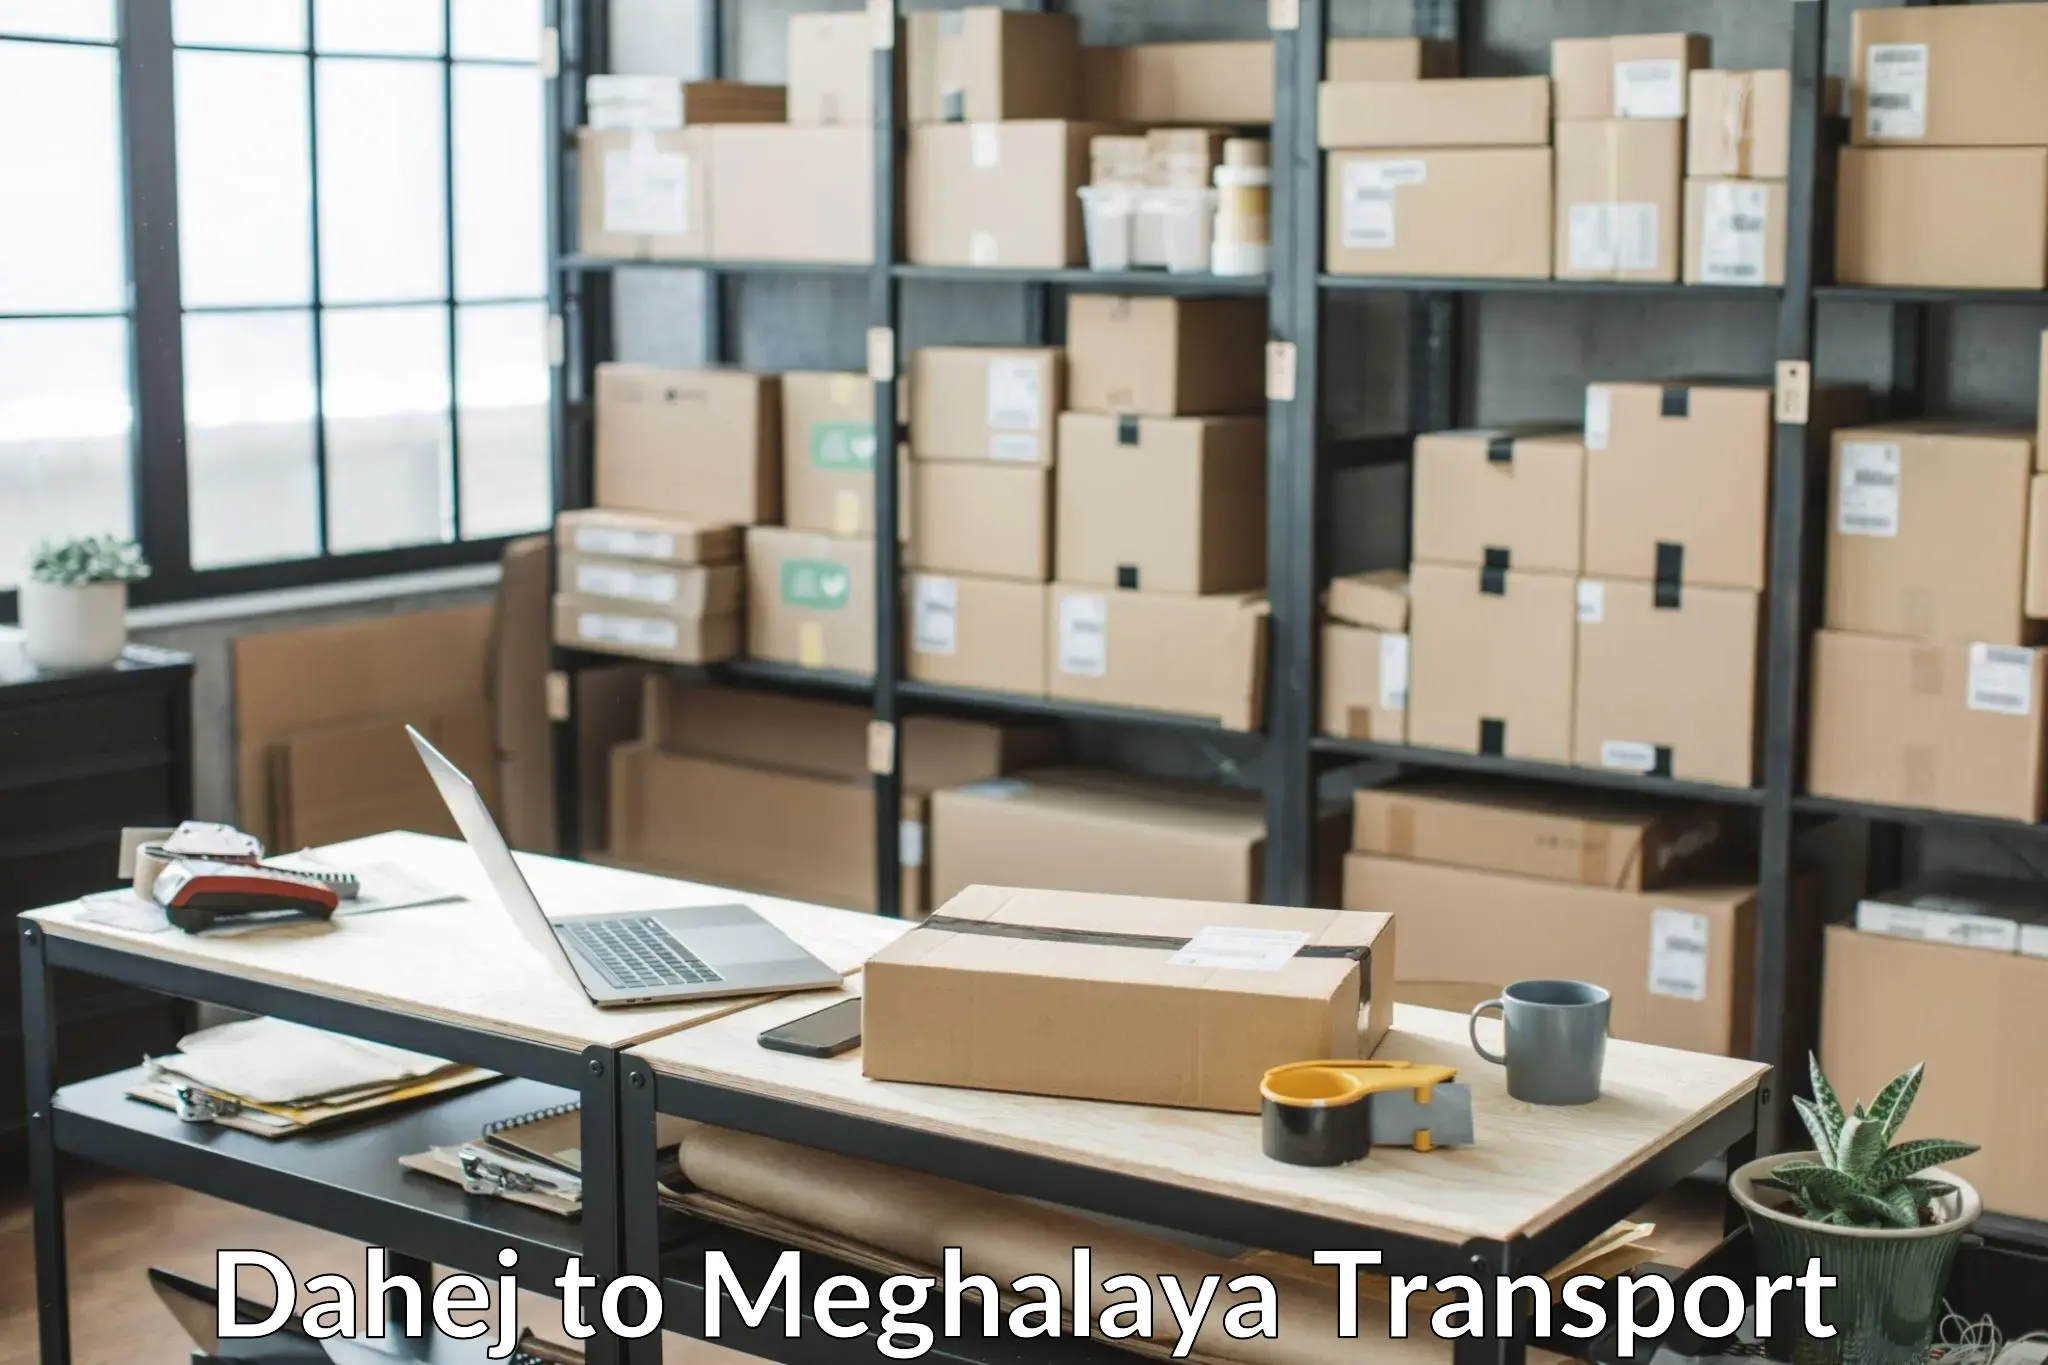 Two wheeler parcel service Dahej to Meghalaya